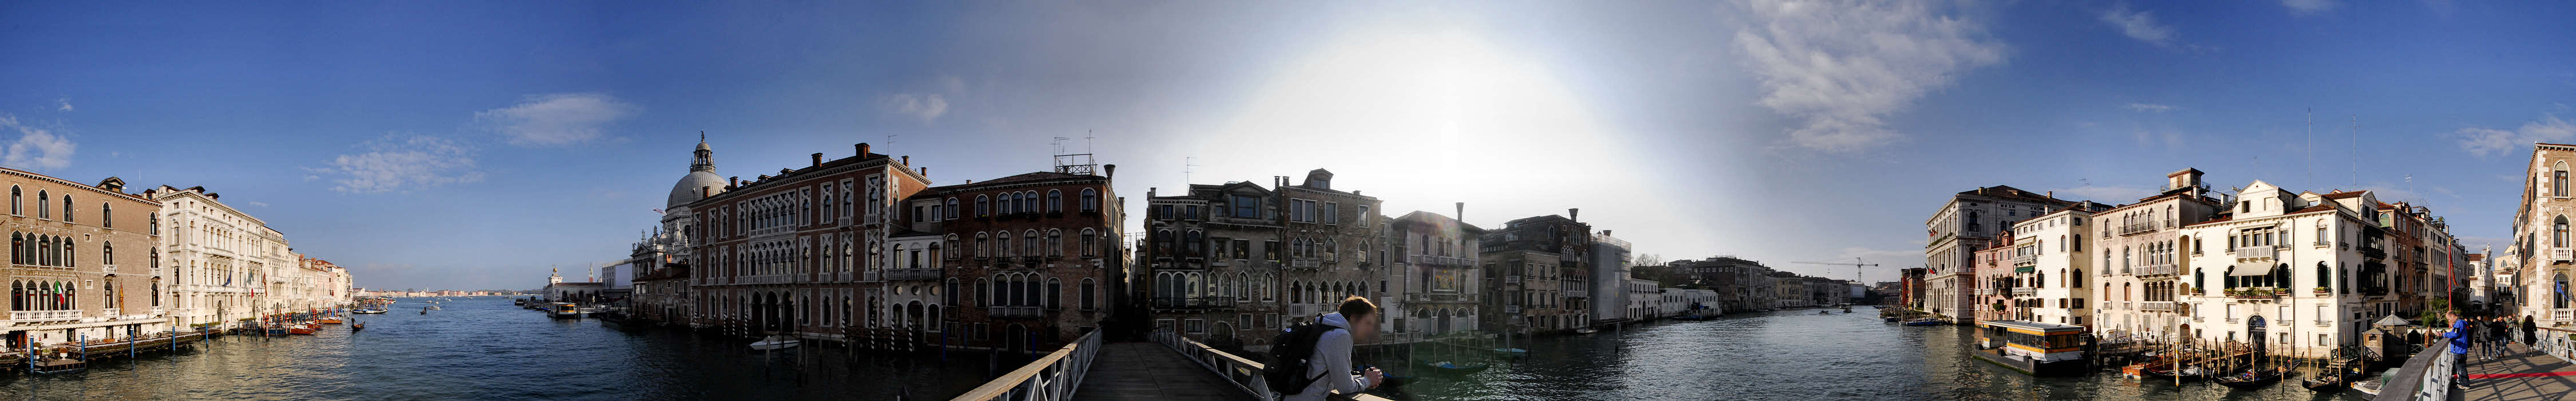 Venezia, ponte della Salute sul Canal Grande